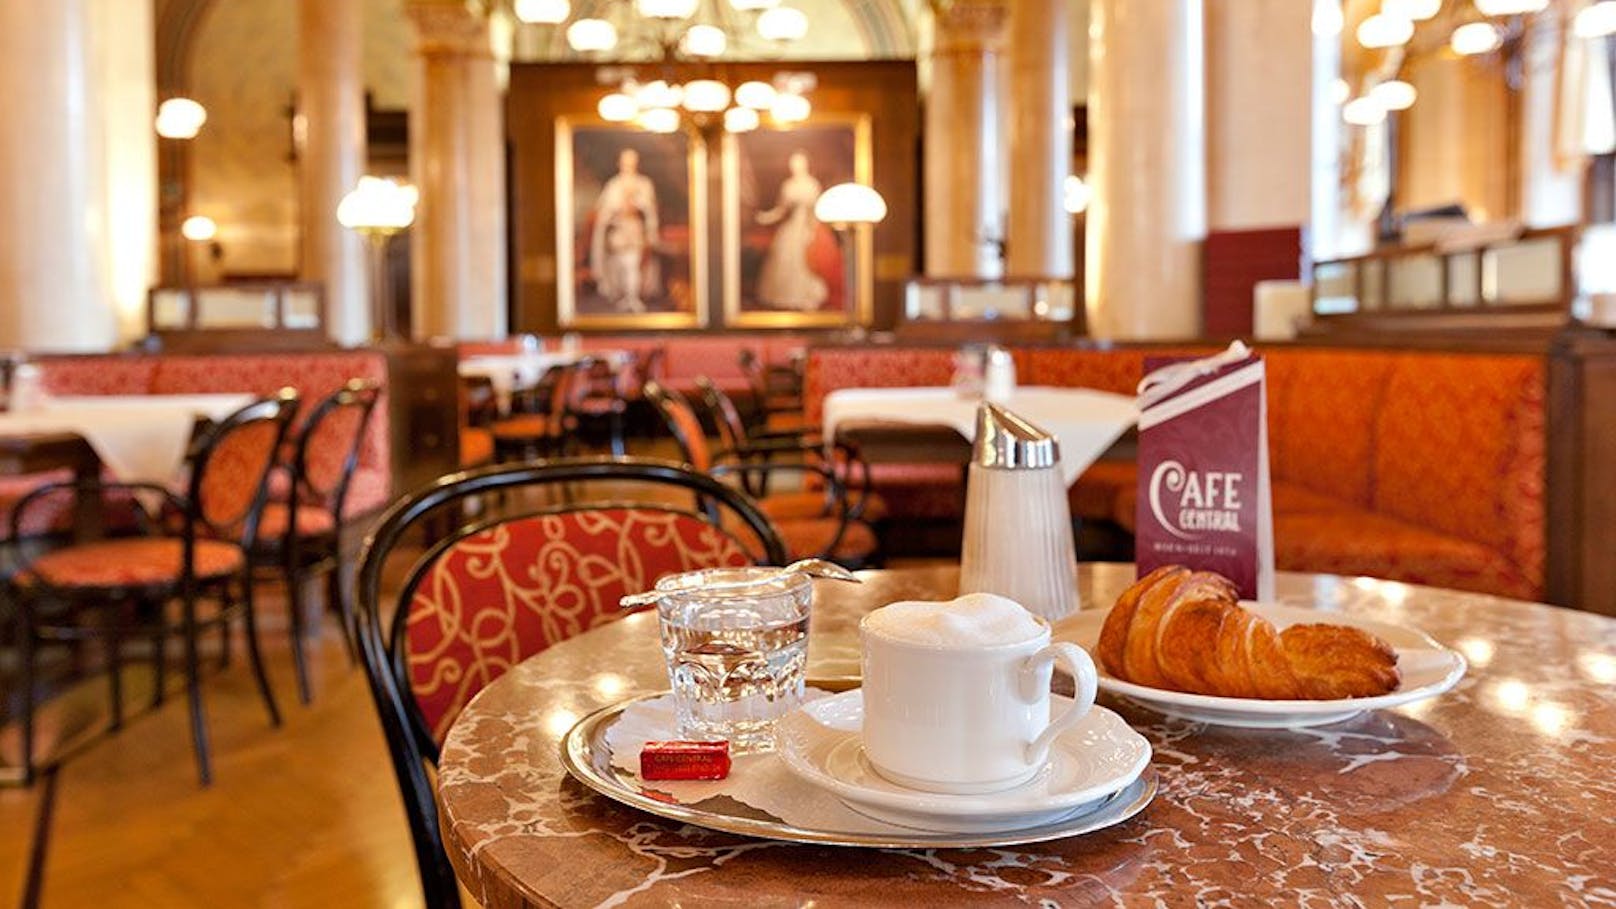 Das im Jahr 1876 gegründete Café Central im prunkvollen Palais Ferstel in der Herrengasse ist besonders bekannt für sein wunderschönes Interieur.